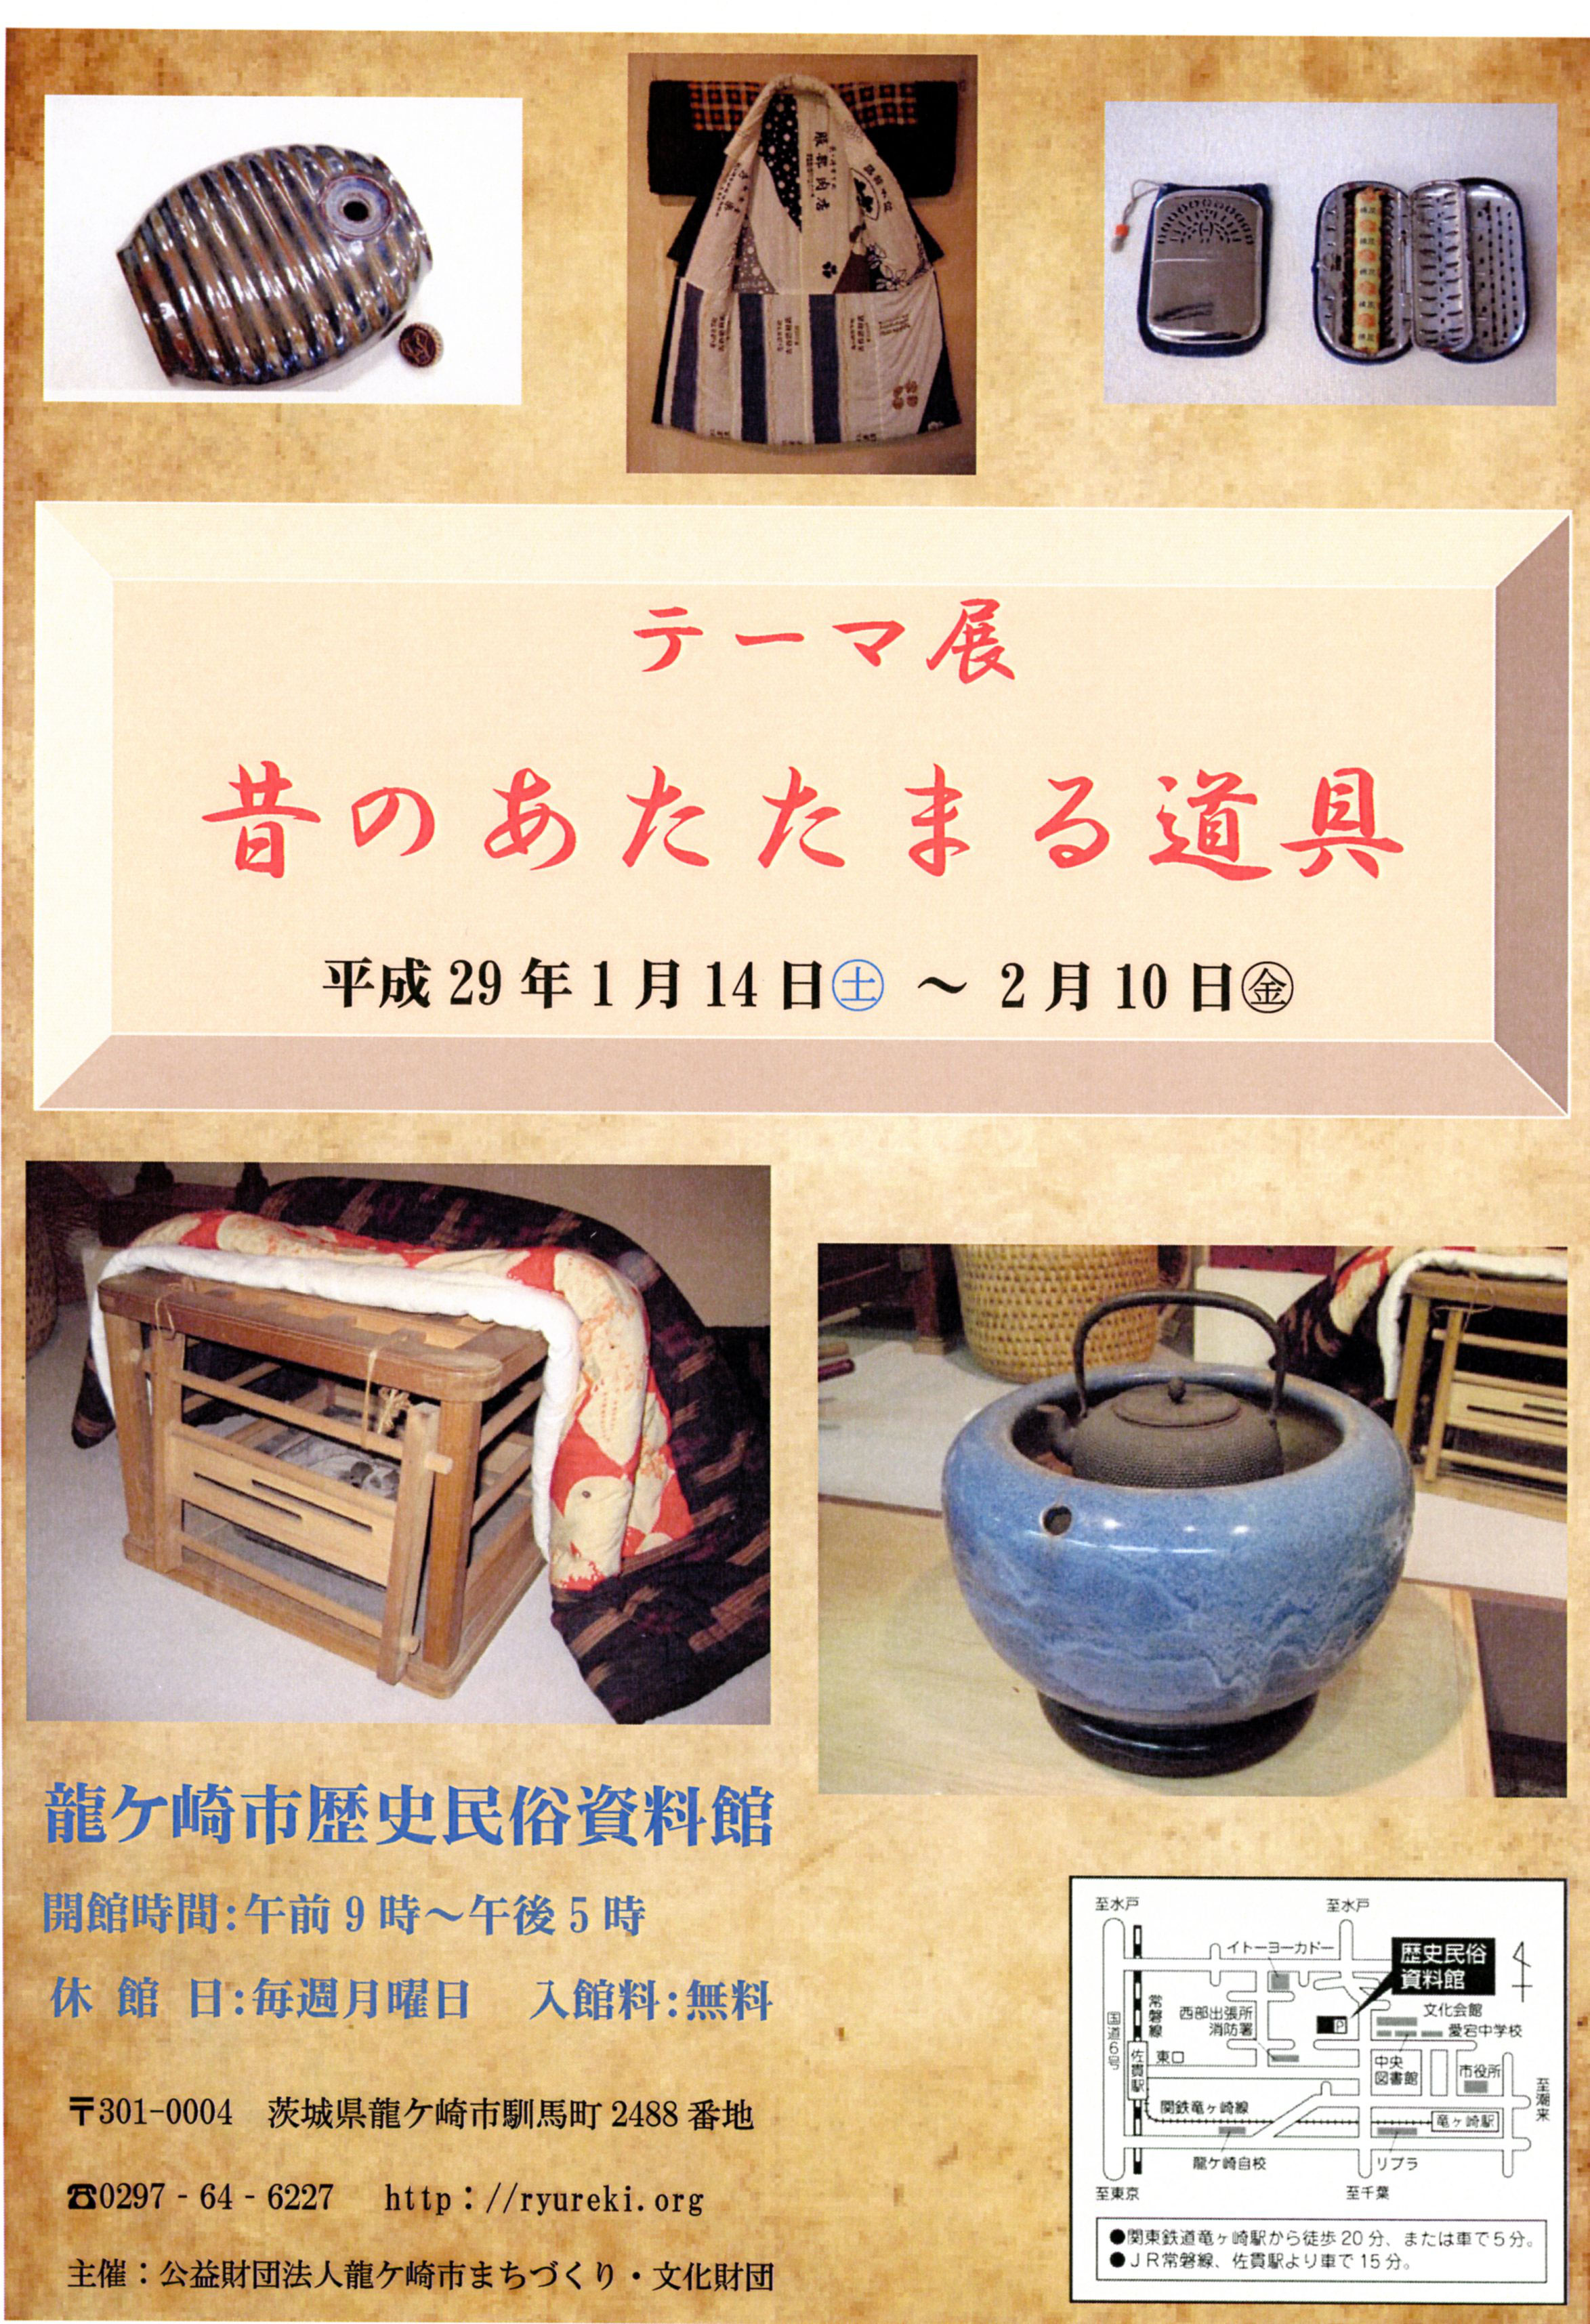 古い道具と昔のくらし」をテーマに展示会 - 龍ケ崎市歴史民俗資料館